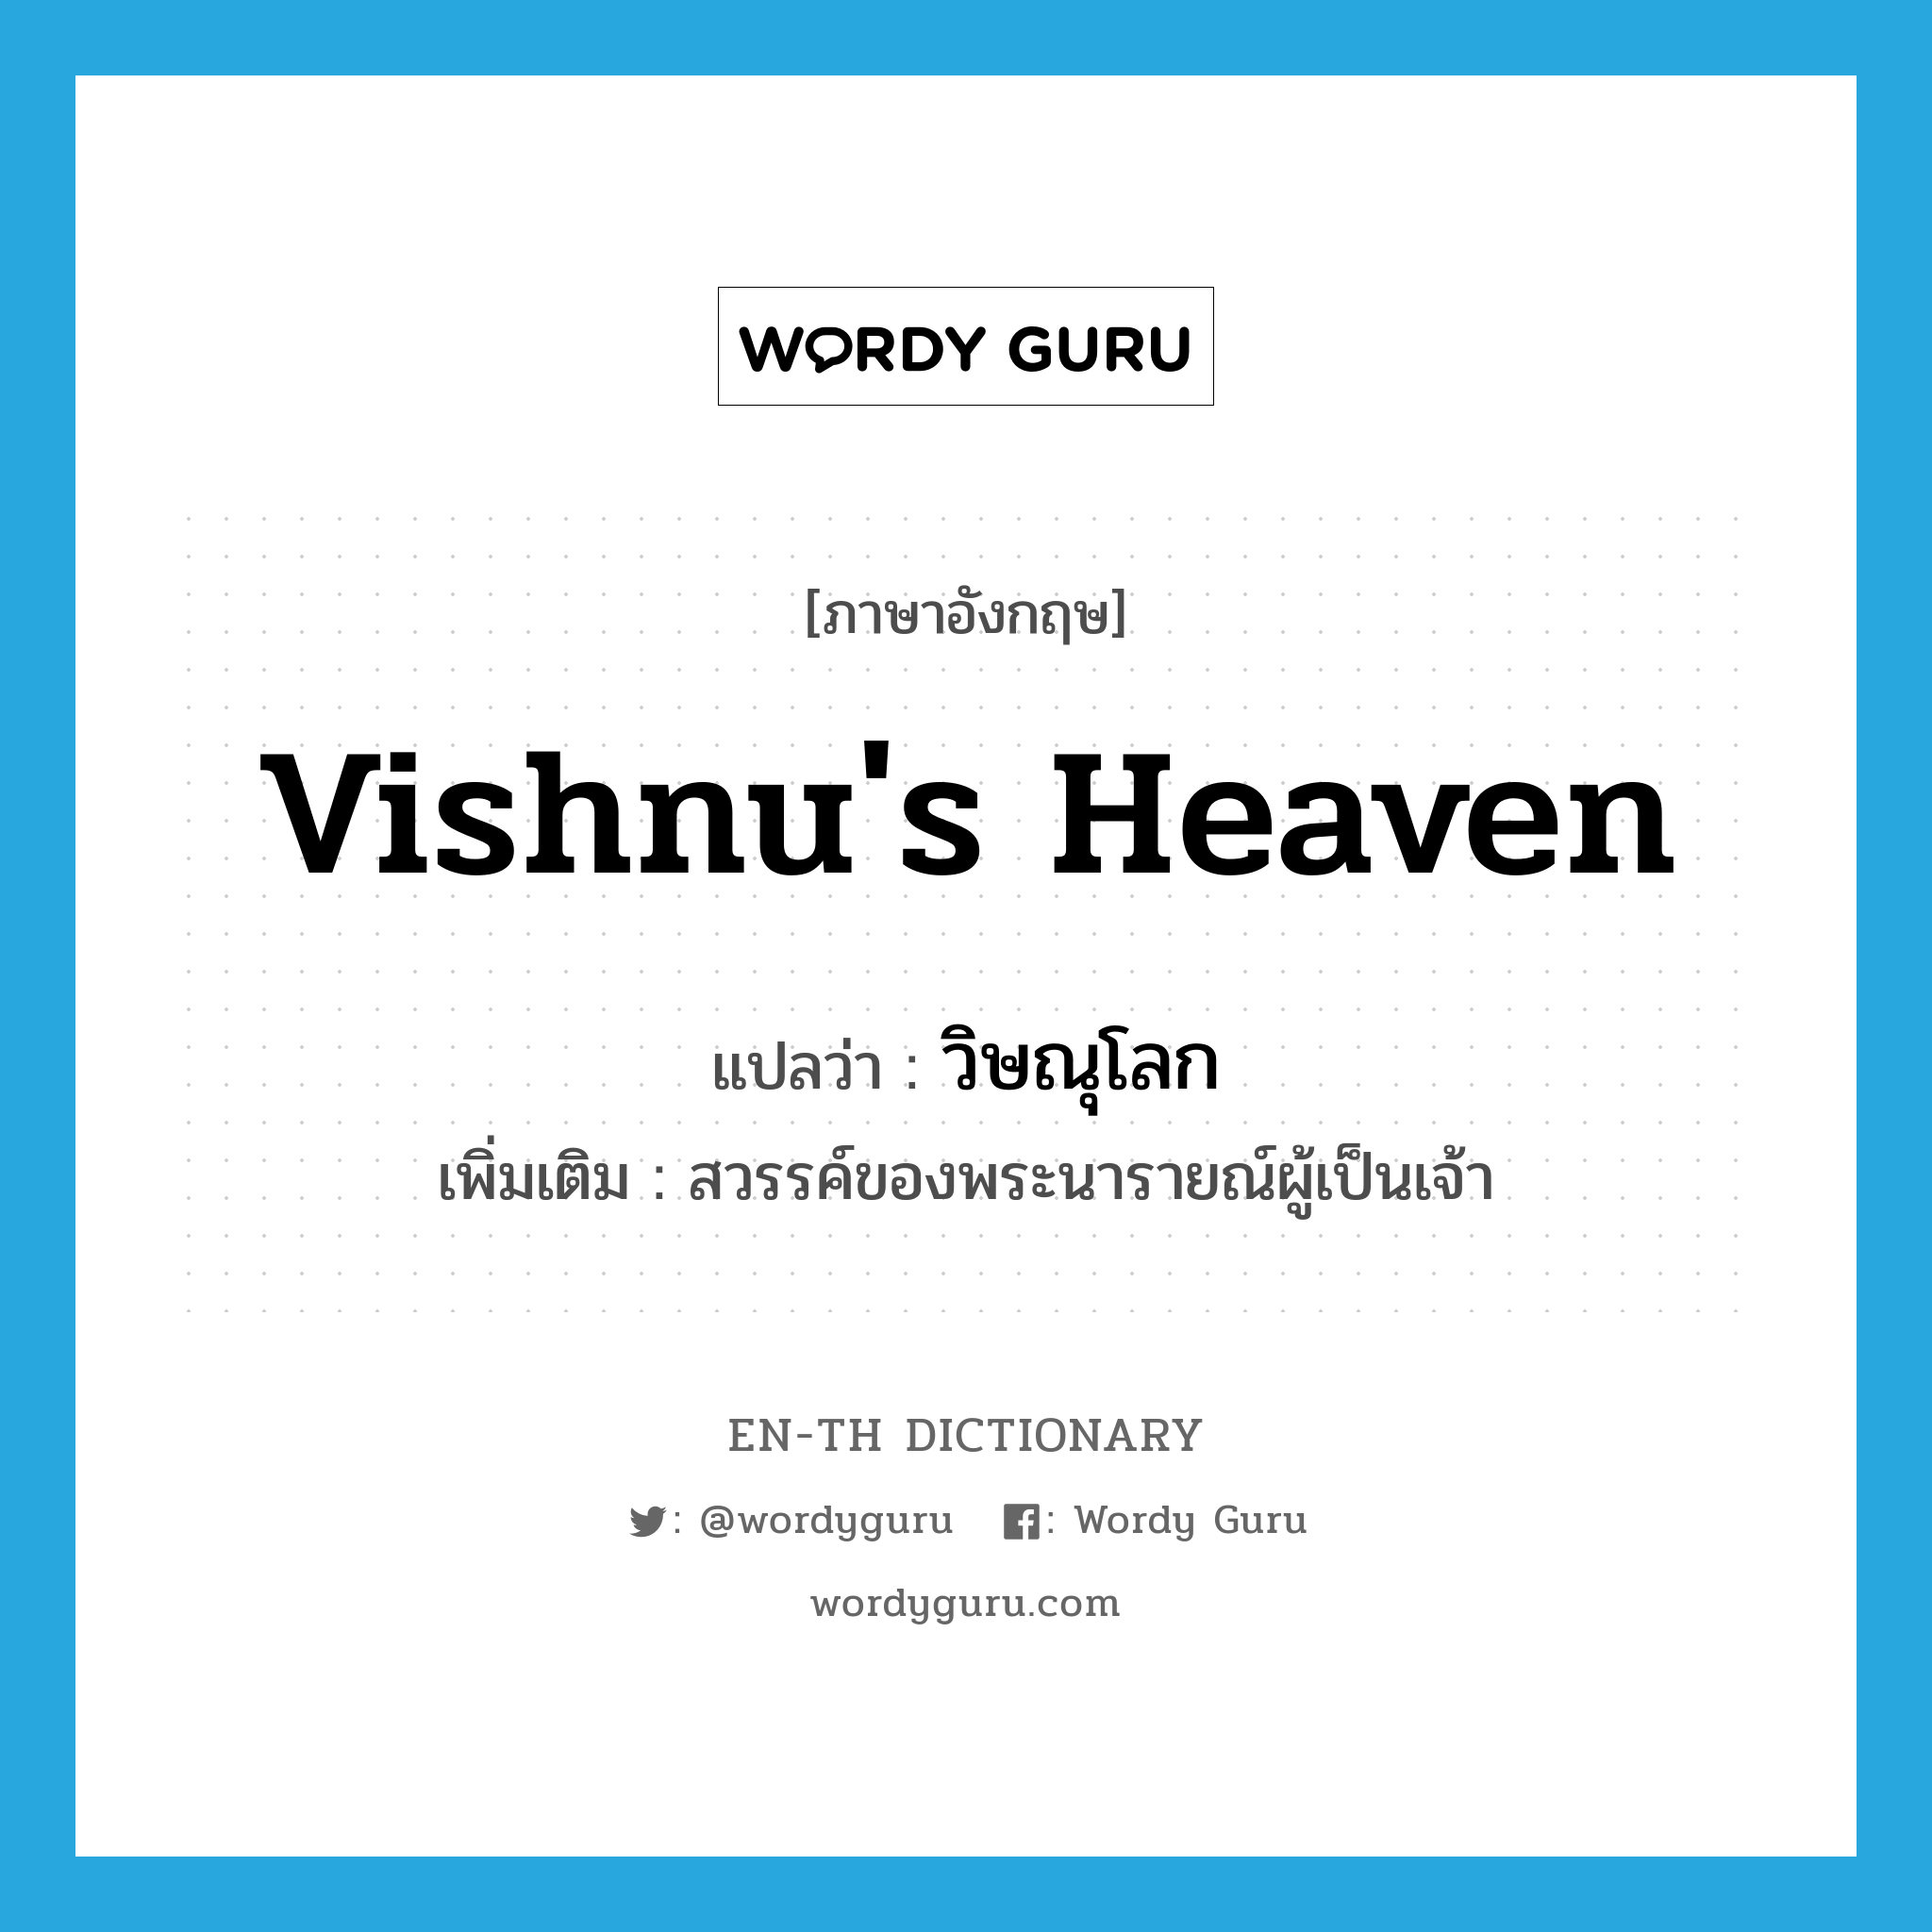 Vishnu's heaven แปลว่า?, คำศัพท์ภาษาอังกฤษ Vishnu's heaven แปลว่า วิษณุโลก ประเภท N เพิ่มเติม สวรรค์ของพระนารายณ์ผู้เป็นเจ้า หมวด N